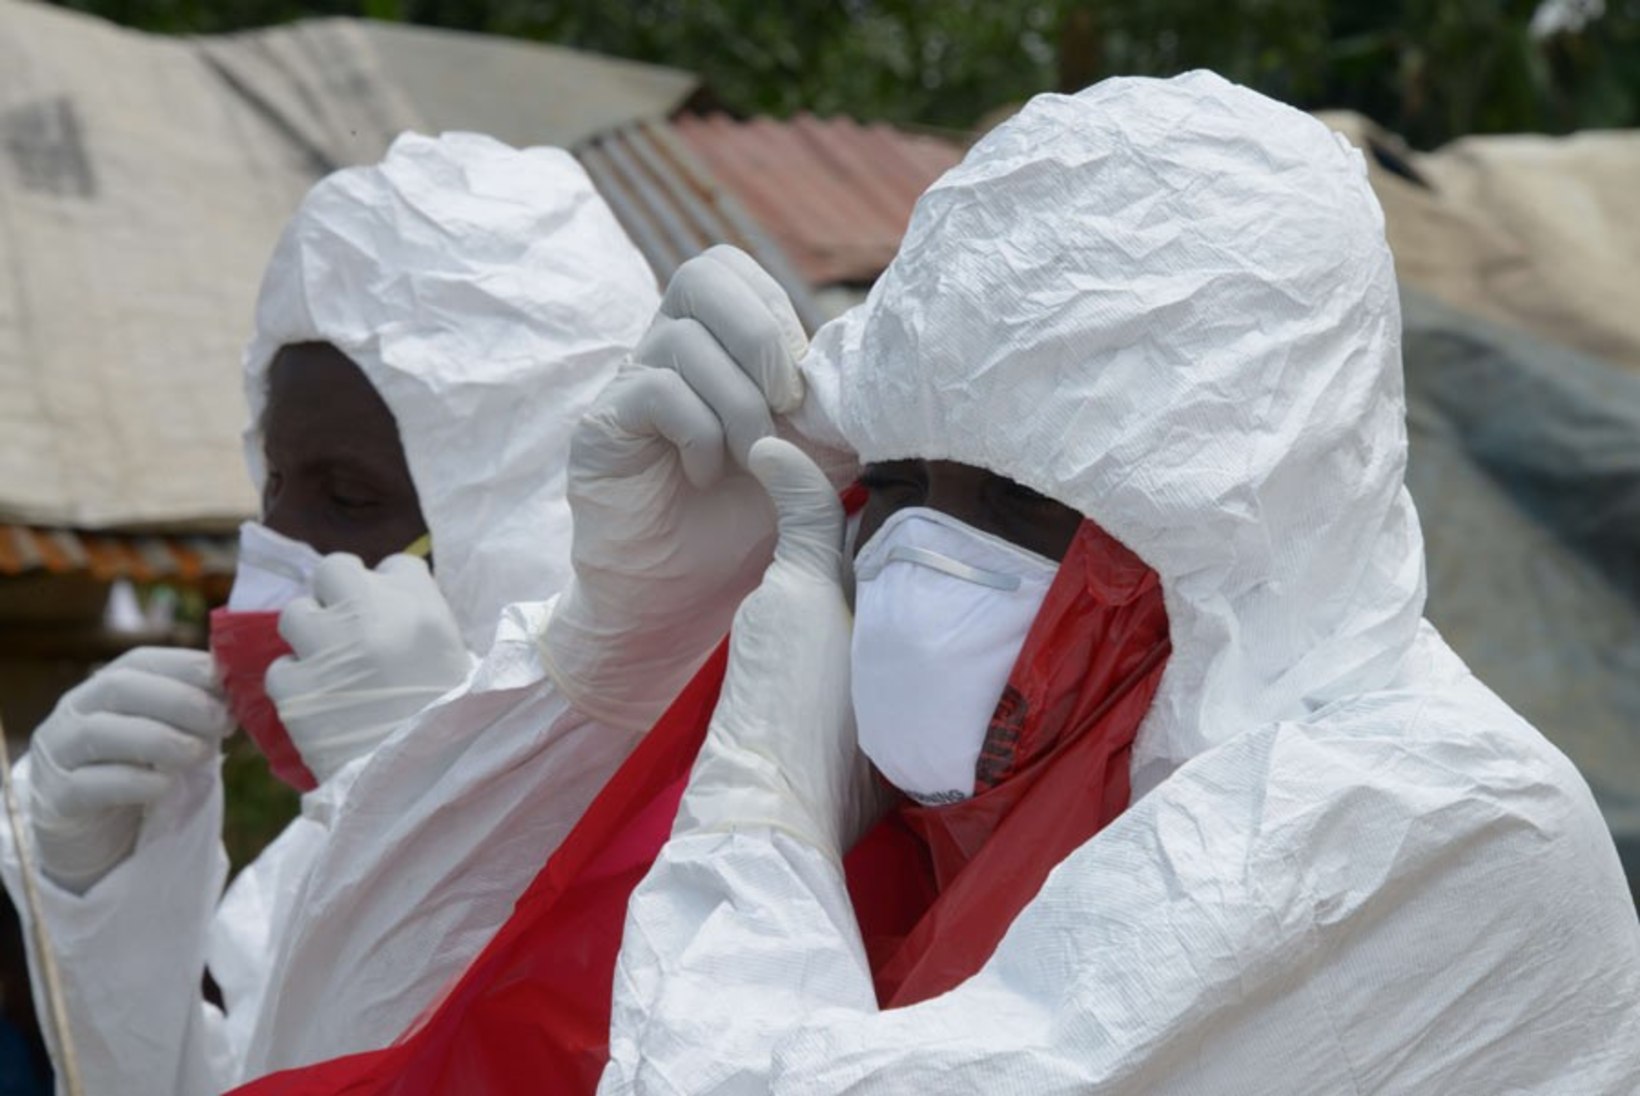 USA abiorganisatsioon eraldab ebola kaitsevarustuse soetamiseks 75 miljonit dollarit